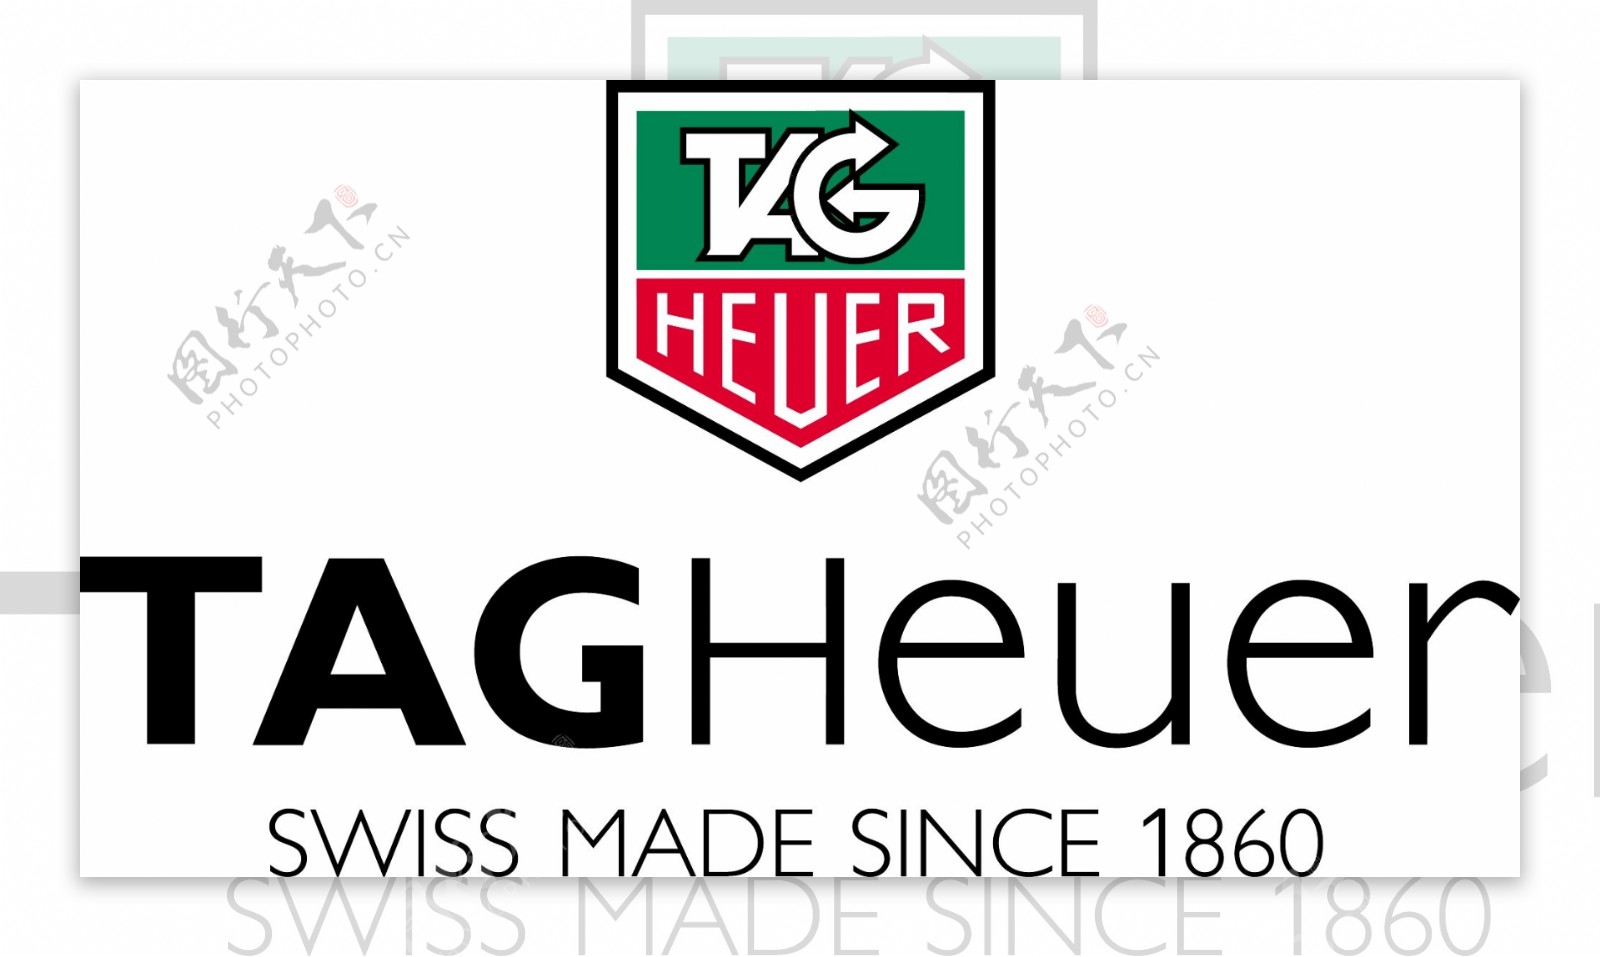 名表tagheuer表logo图片